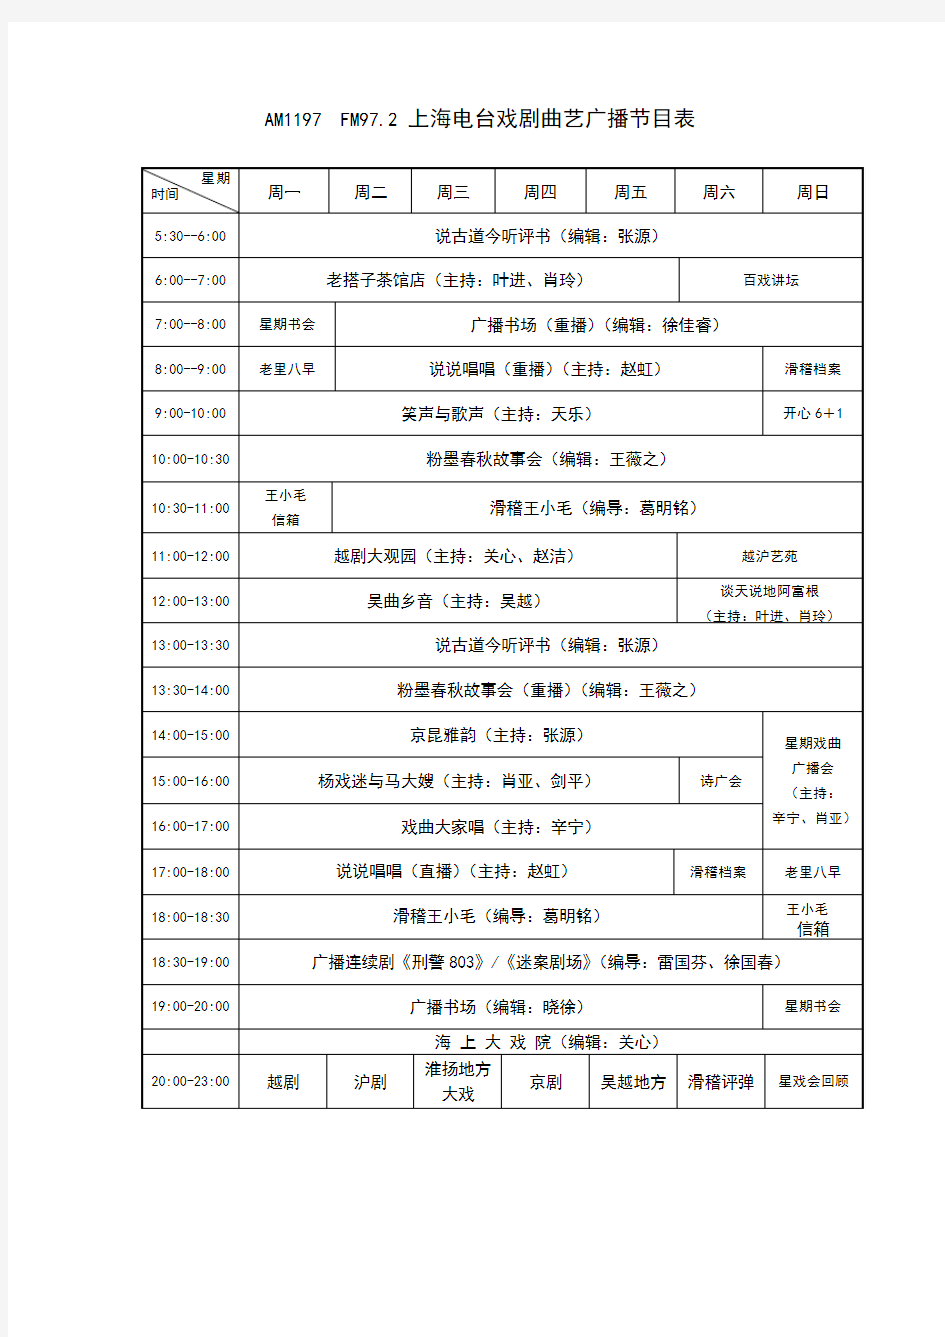 上海戏曲广播节目时间表